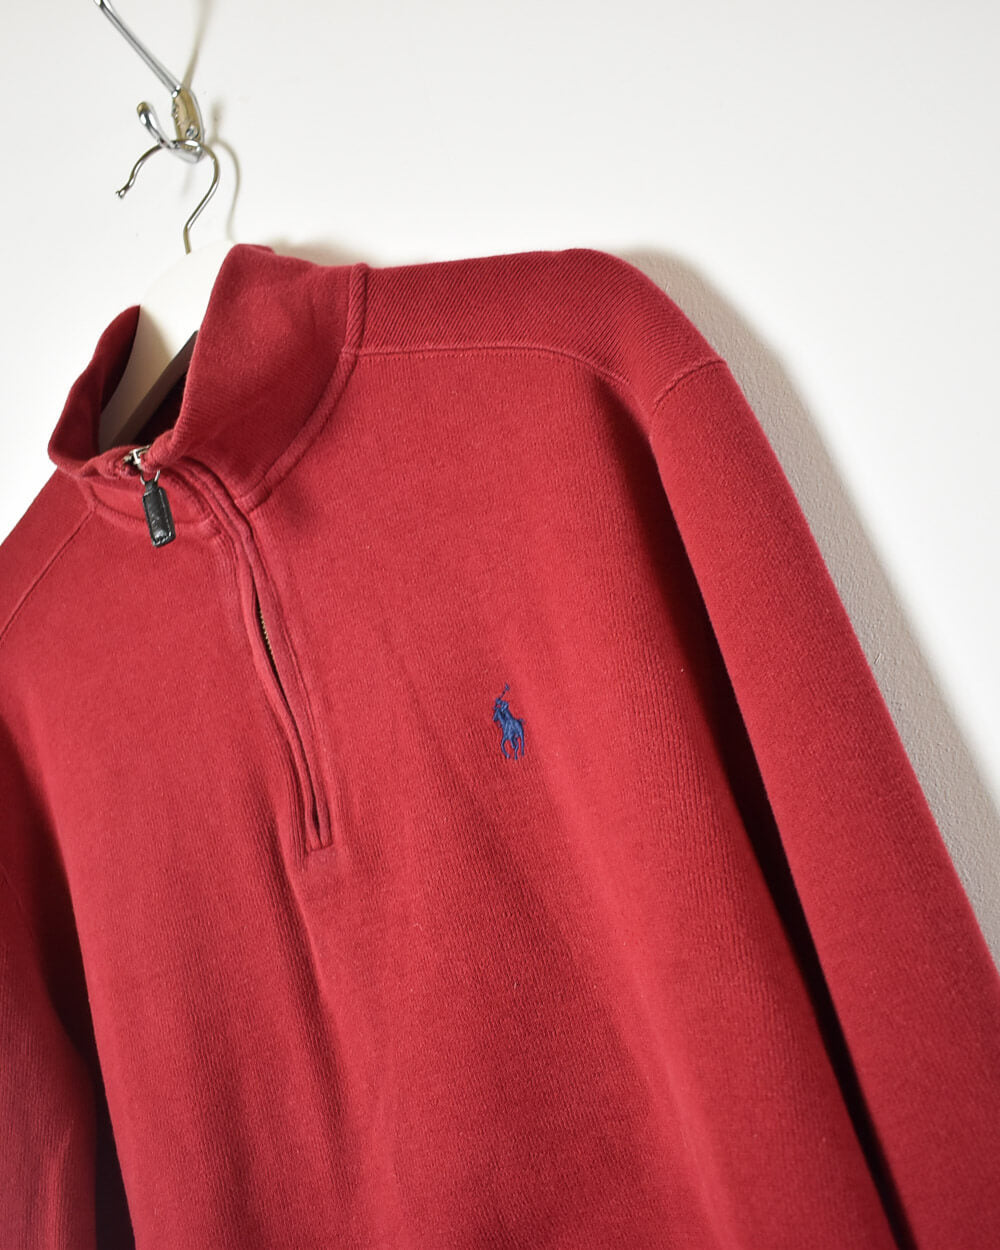 Red Ralph Lauren 1/4 Zip Sweatshirt - Medium